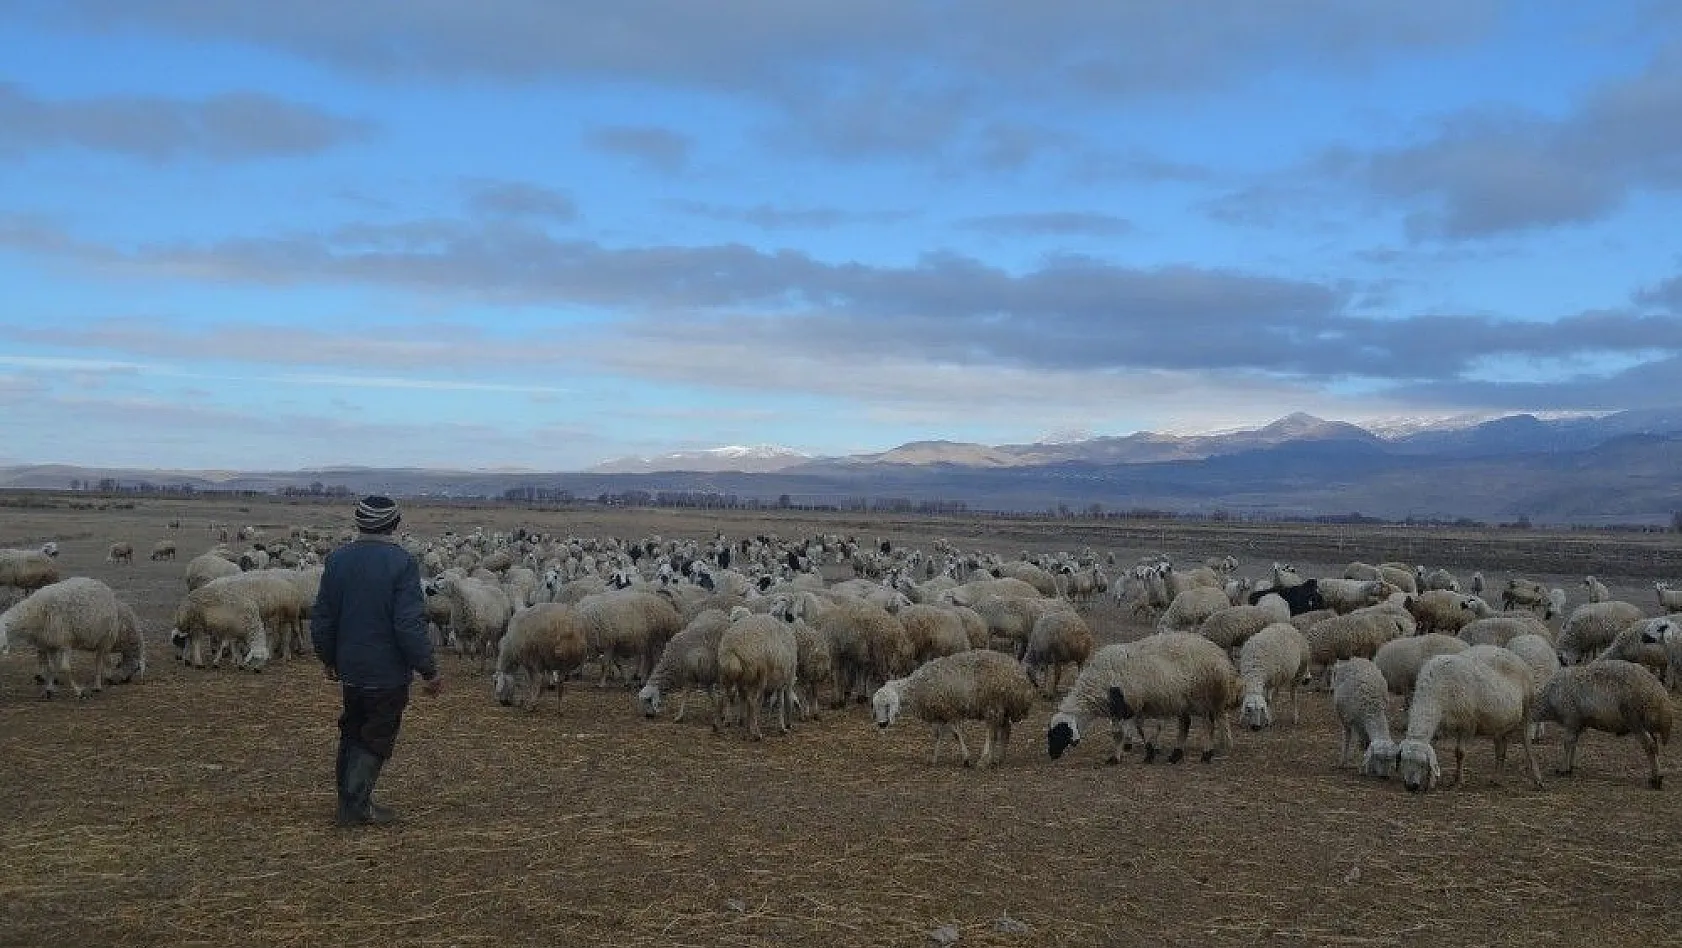 Çobanlar hem kış şartları hem de arazi şartları ile mücadele ediyor